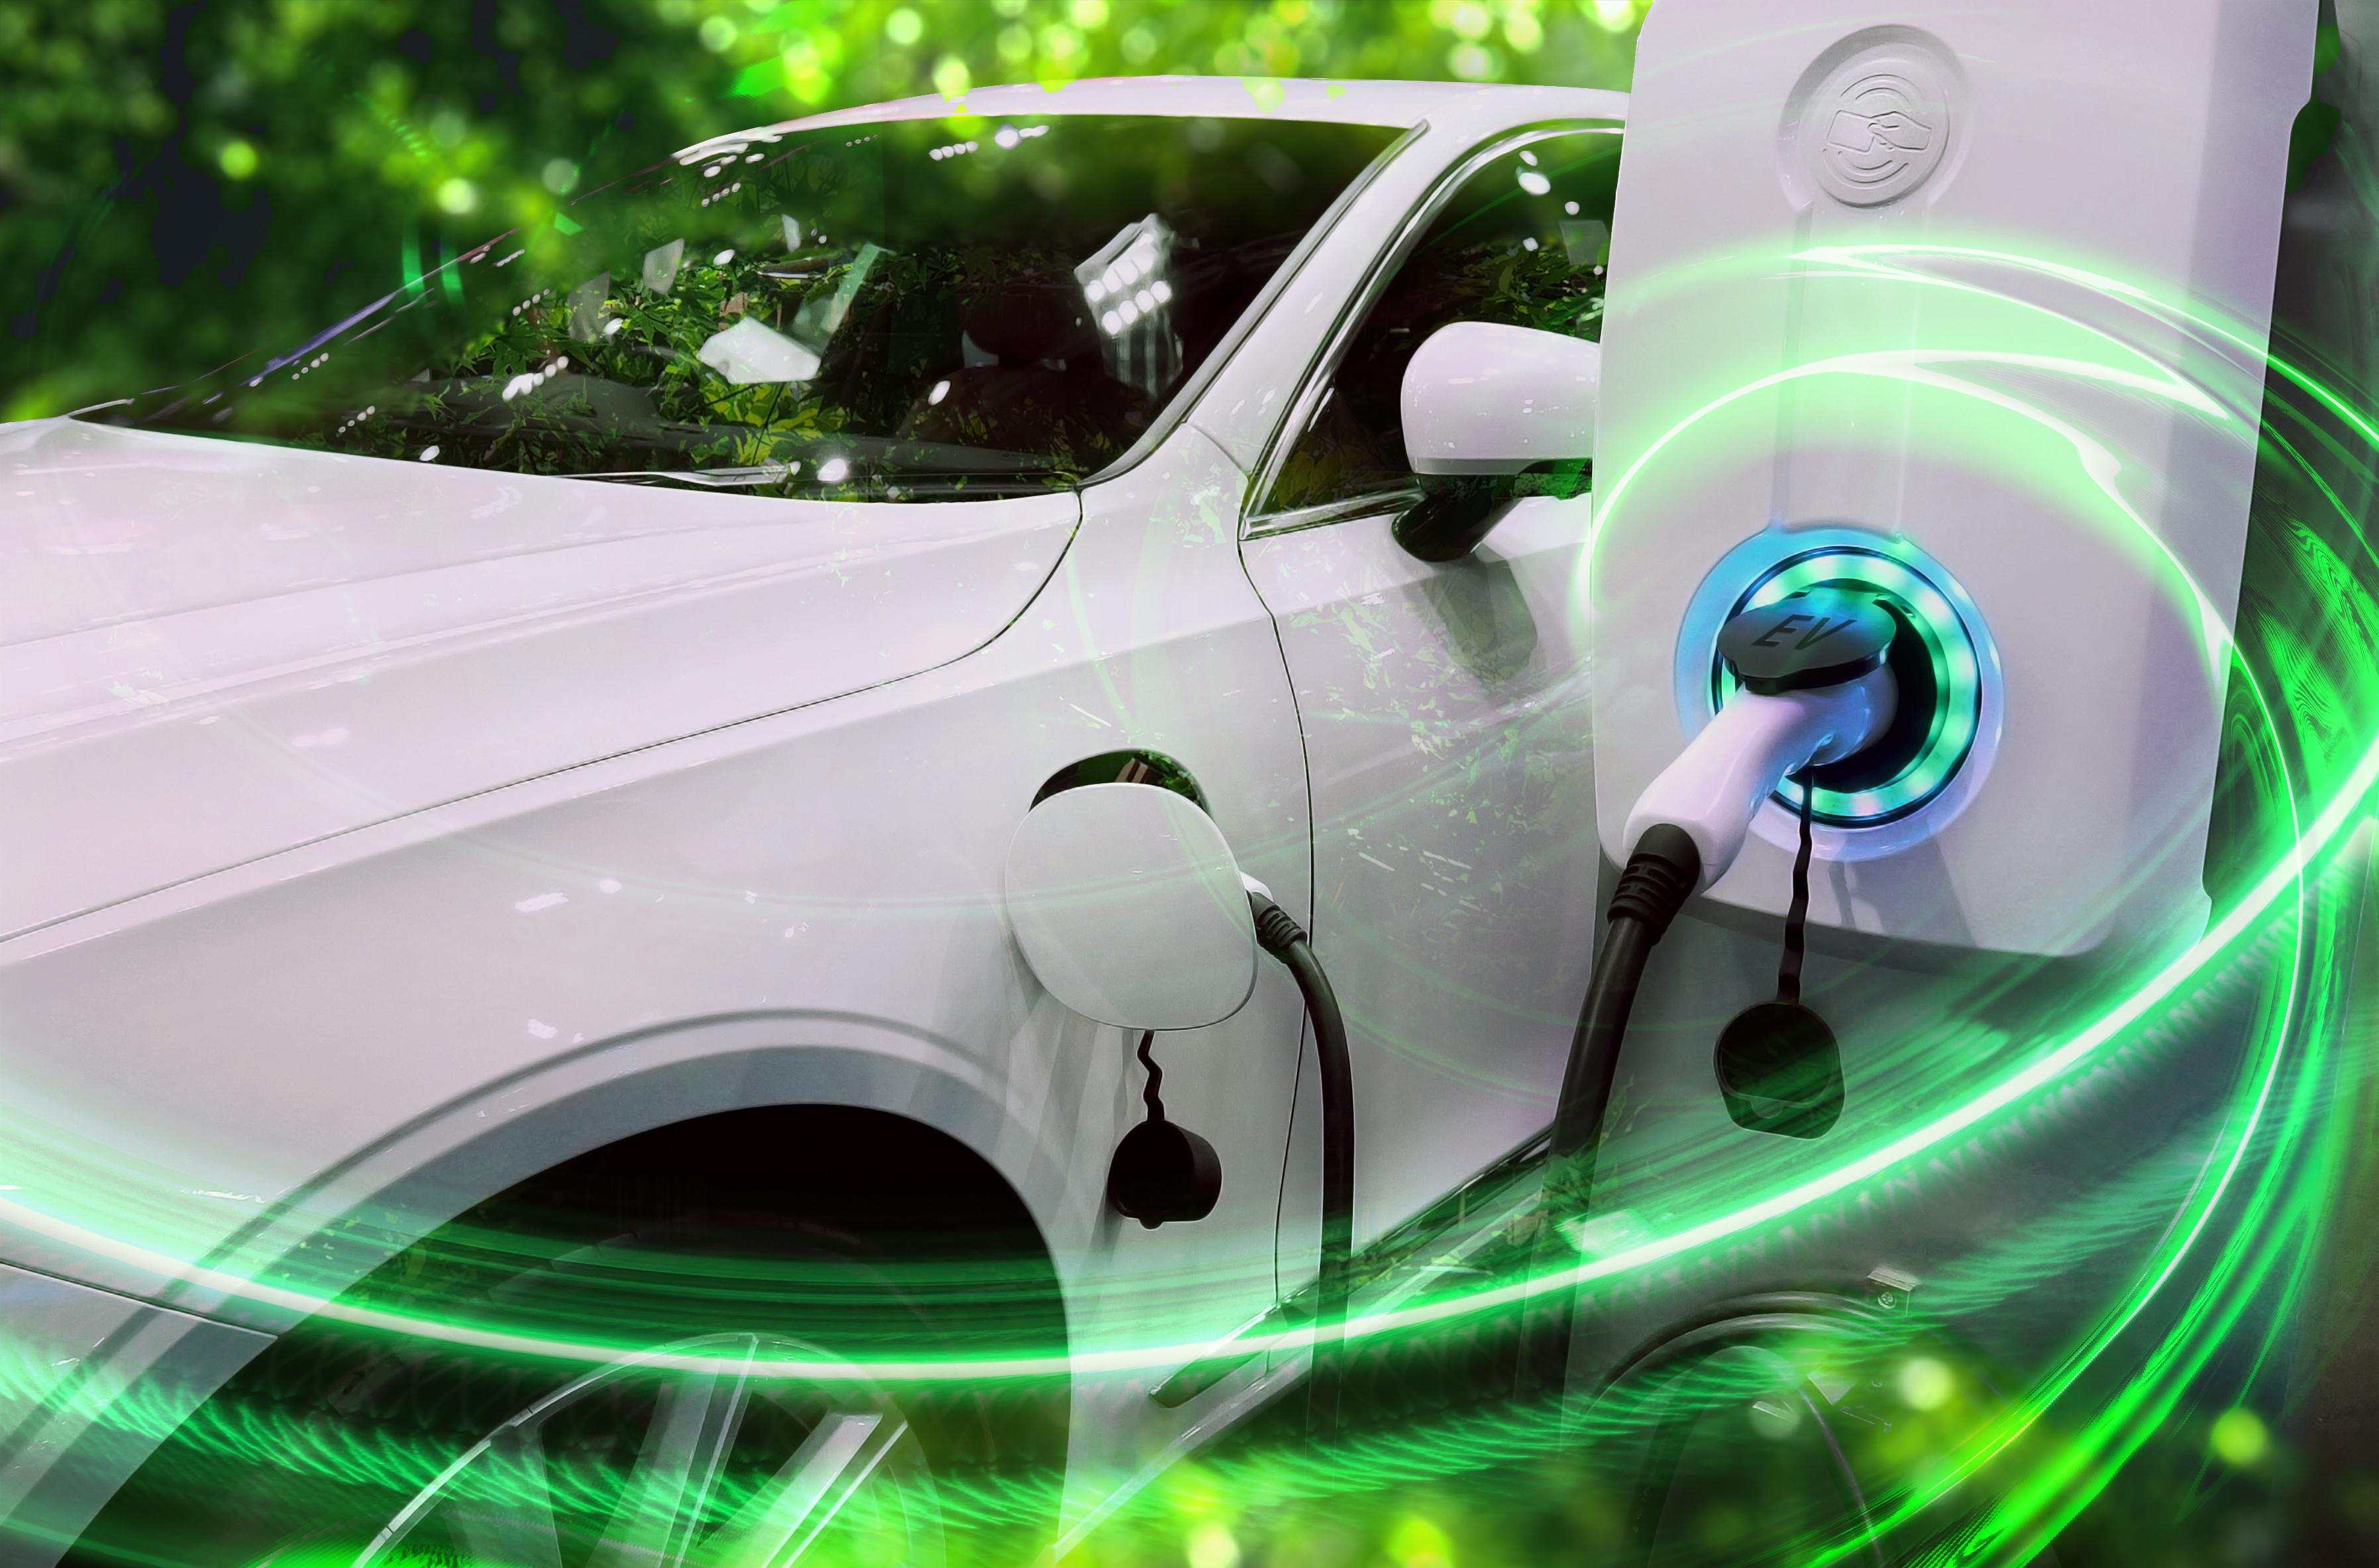 Kuvassa näkyy valkoinen tummalasinen sähköauto latauksessa sekä valkoinen sähköautojen latauslaite, johon latausjohto yhdistyy. Kuvan taustalla näkyy vihreää valoa ja etuosassa on vihreitä valojuovia.